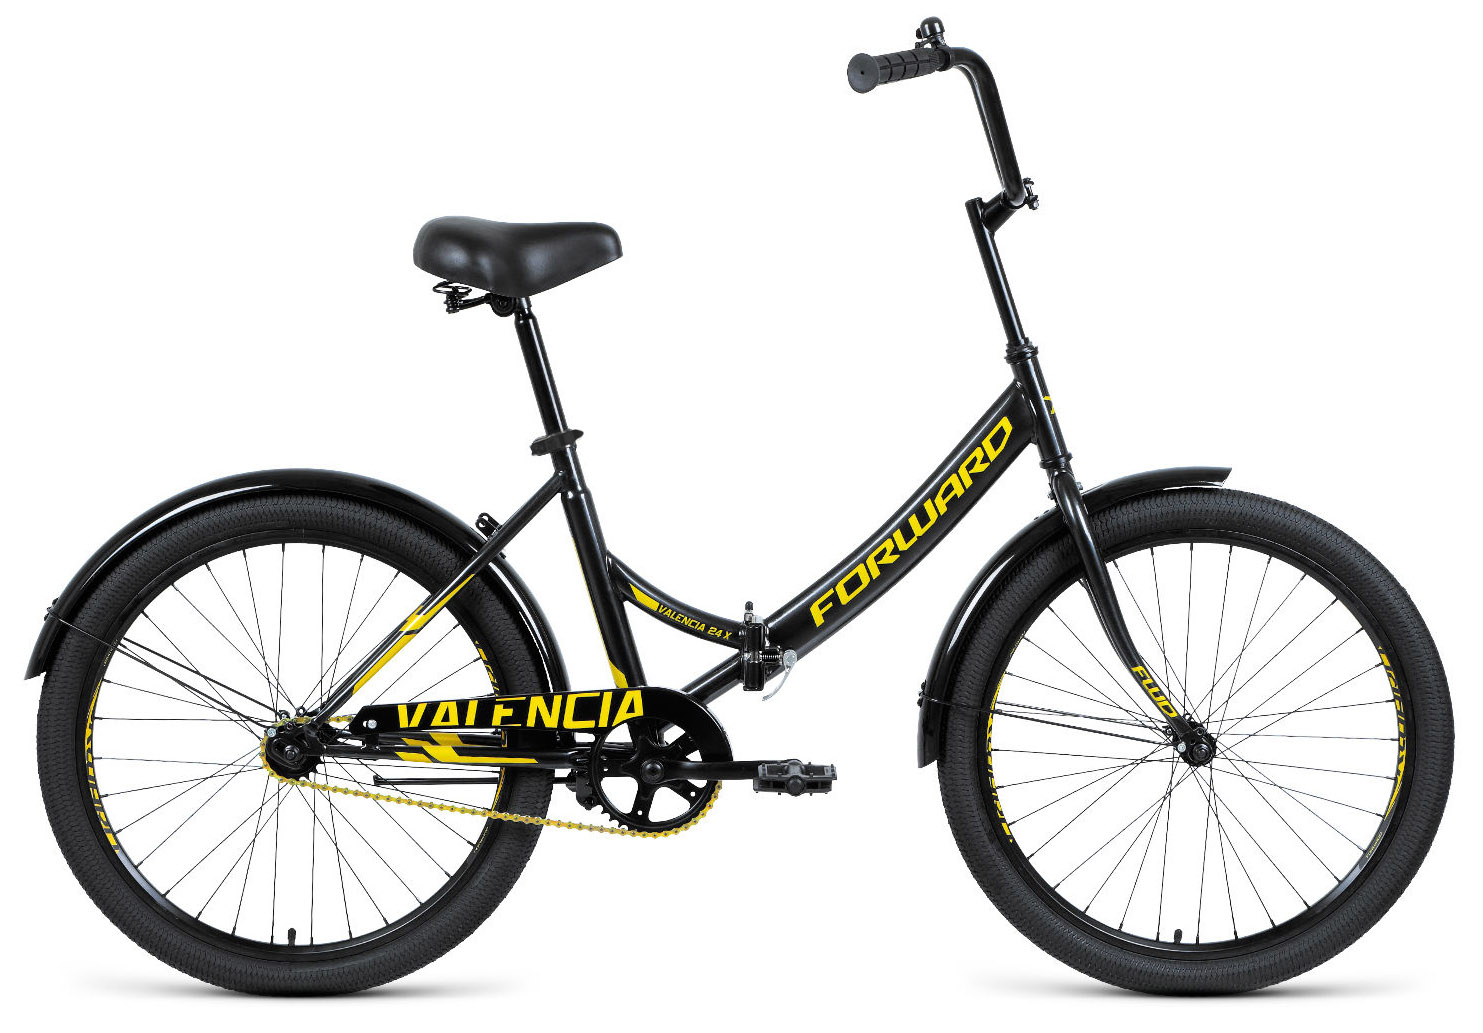  Отзывы о Складном велосипеде Forward Valencia 24 X 2022